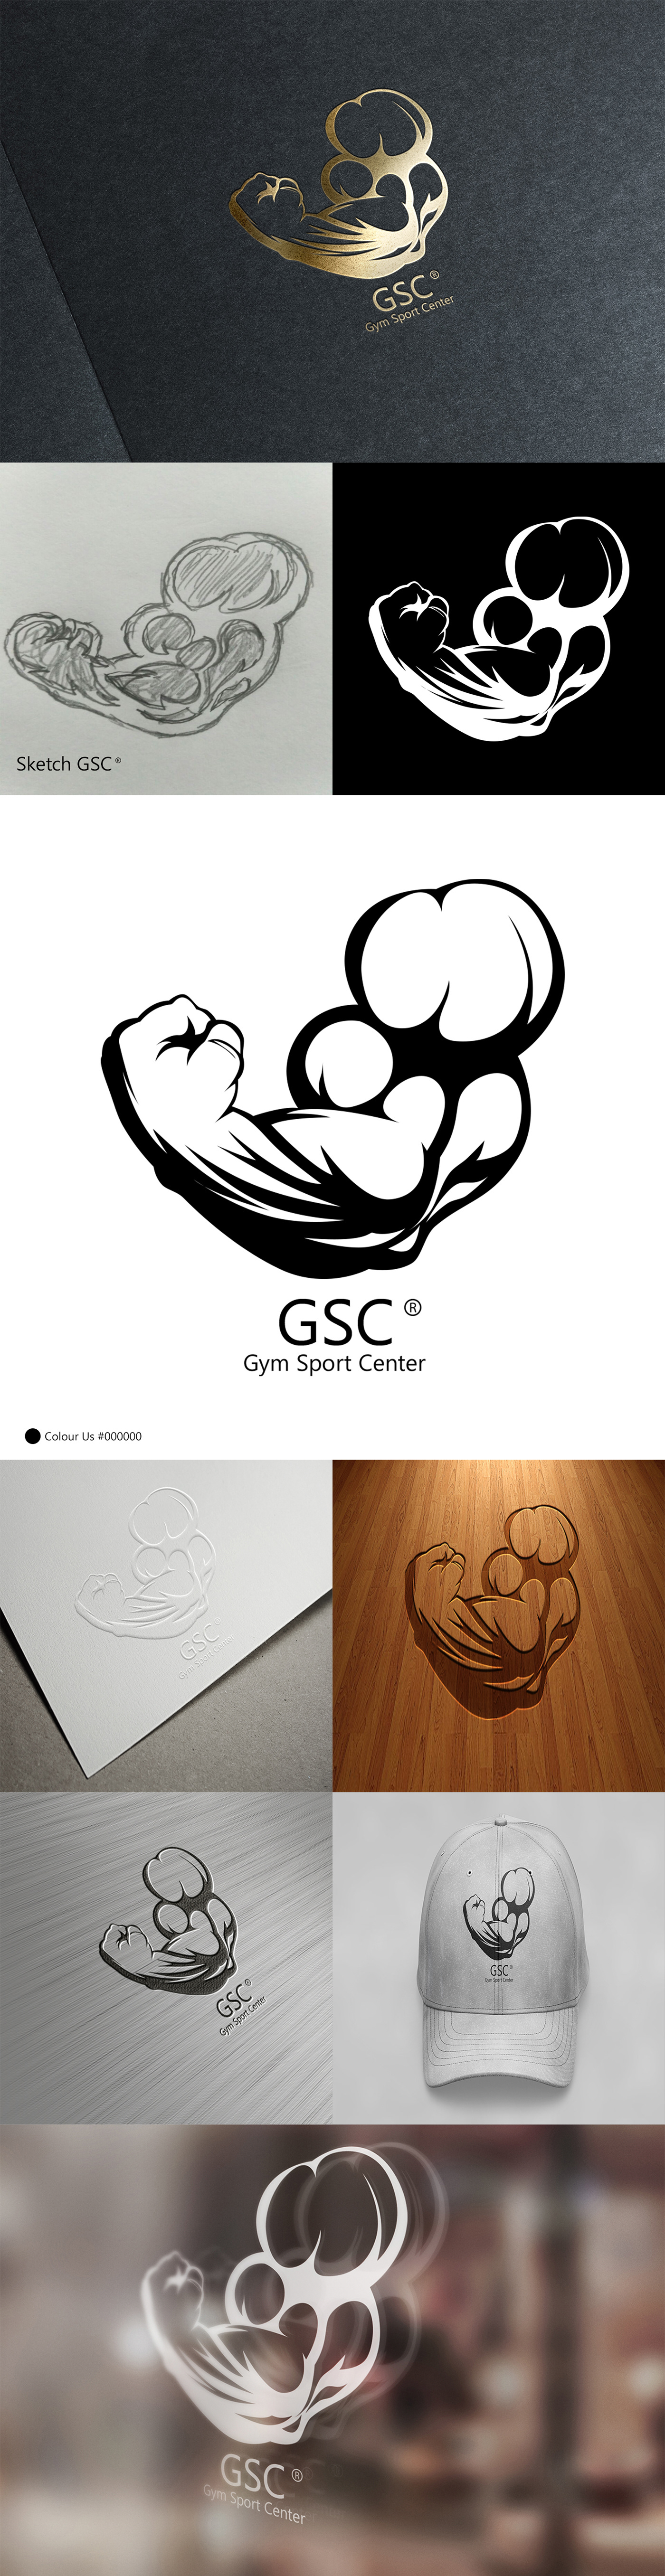 gym GYM logos Sport Logs FITE fitness Fitness Logos